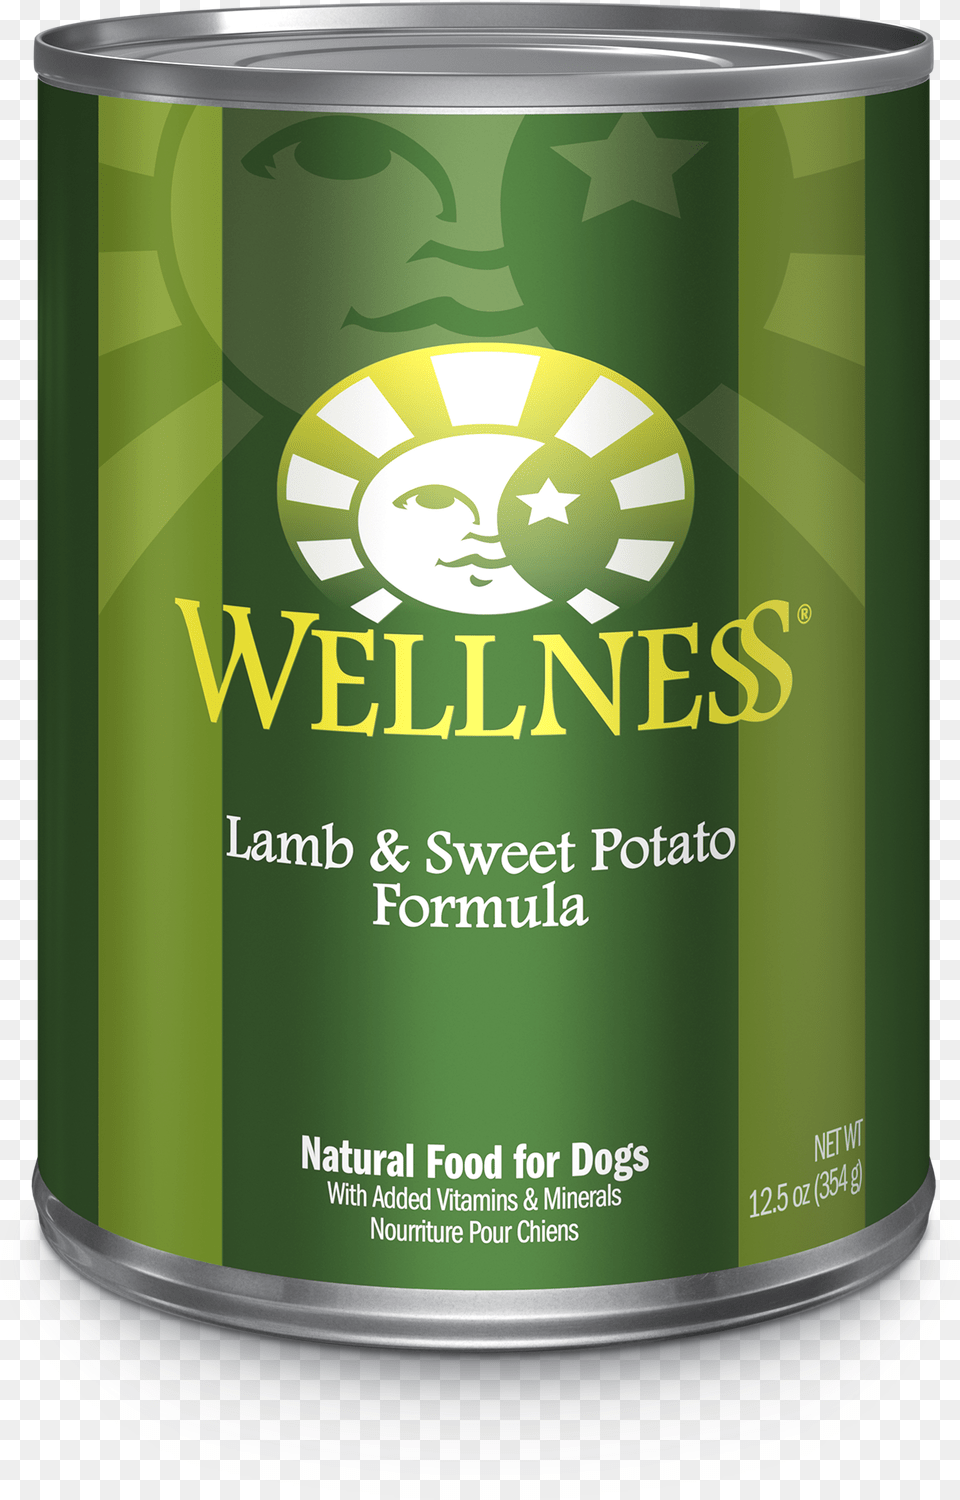 Lamb And Sweet Potato Wellness Dog Food, Tin, Can, Aluminium, Canned Goods Free Transparent Png